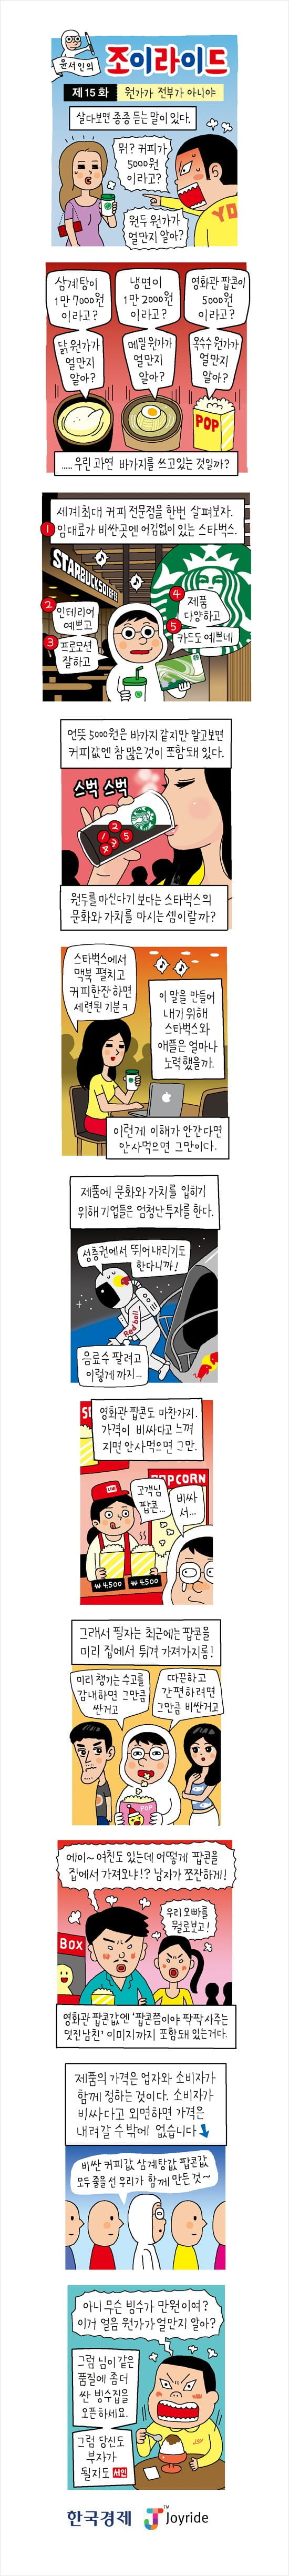 [윤서인의 웹툰'조이라이드'] (2) 원가공개는 소비자 이익을 해친다